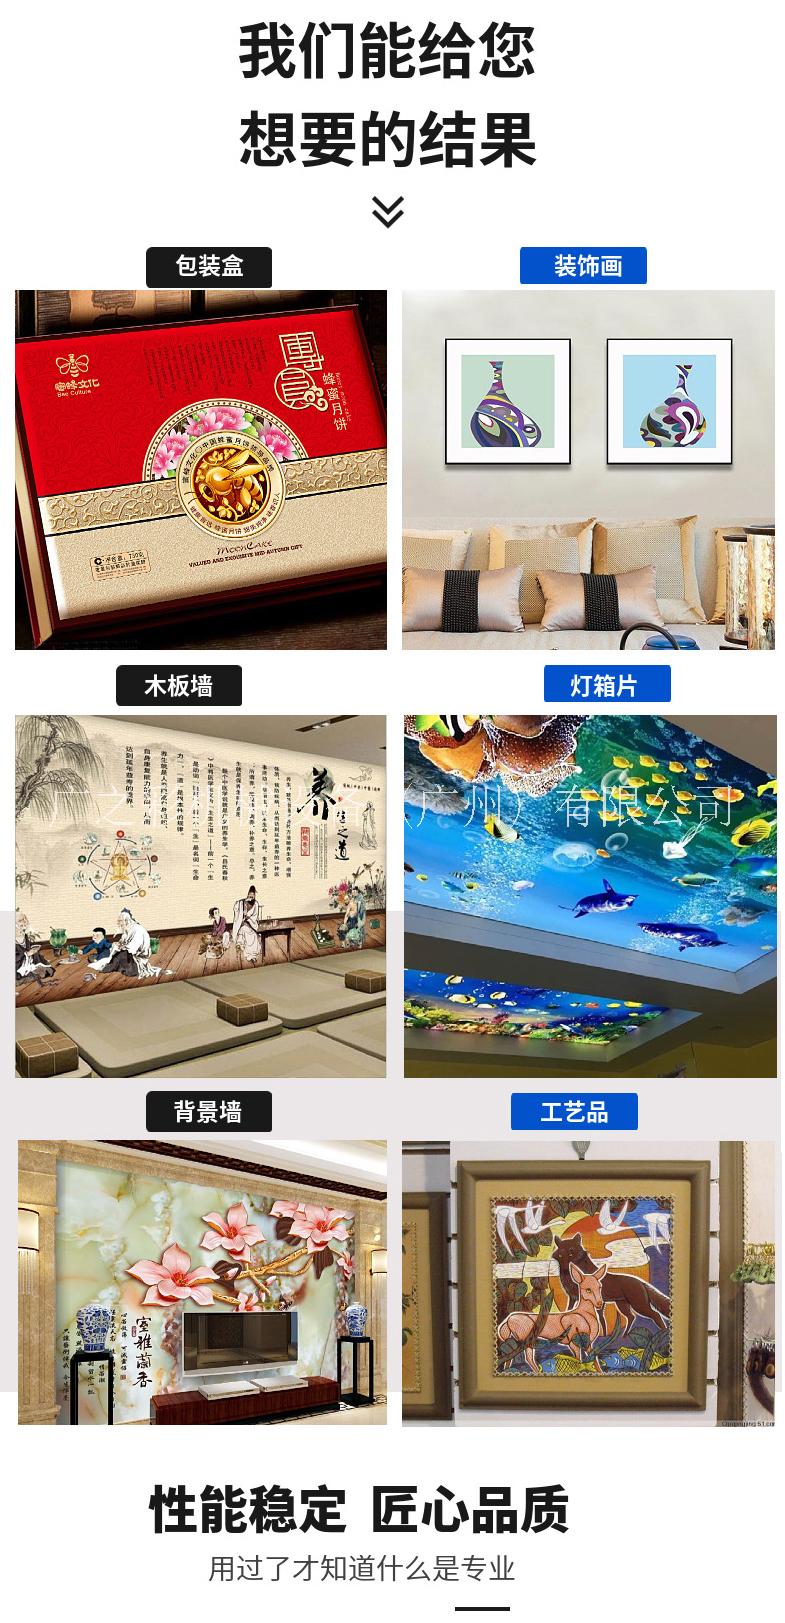 广州市广之彩UV平板打印机KUNGZC厂家重庆市平板电脑打印机广之彩UV平板打印机KUNGZC1216可用于包装 装饰 天花板 木板 复合板